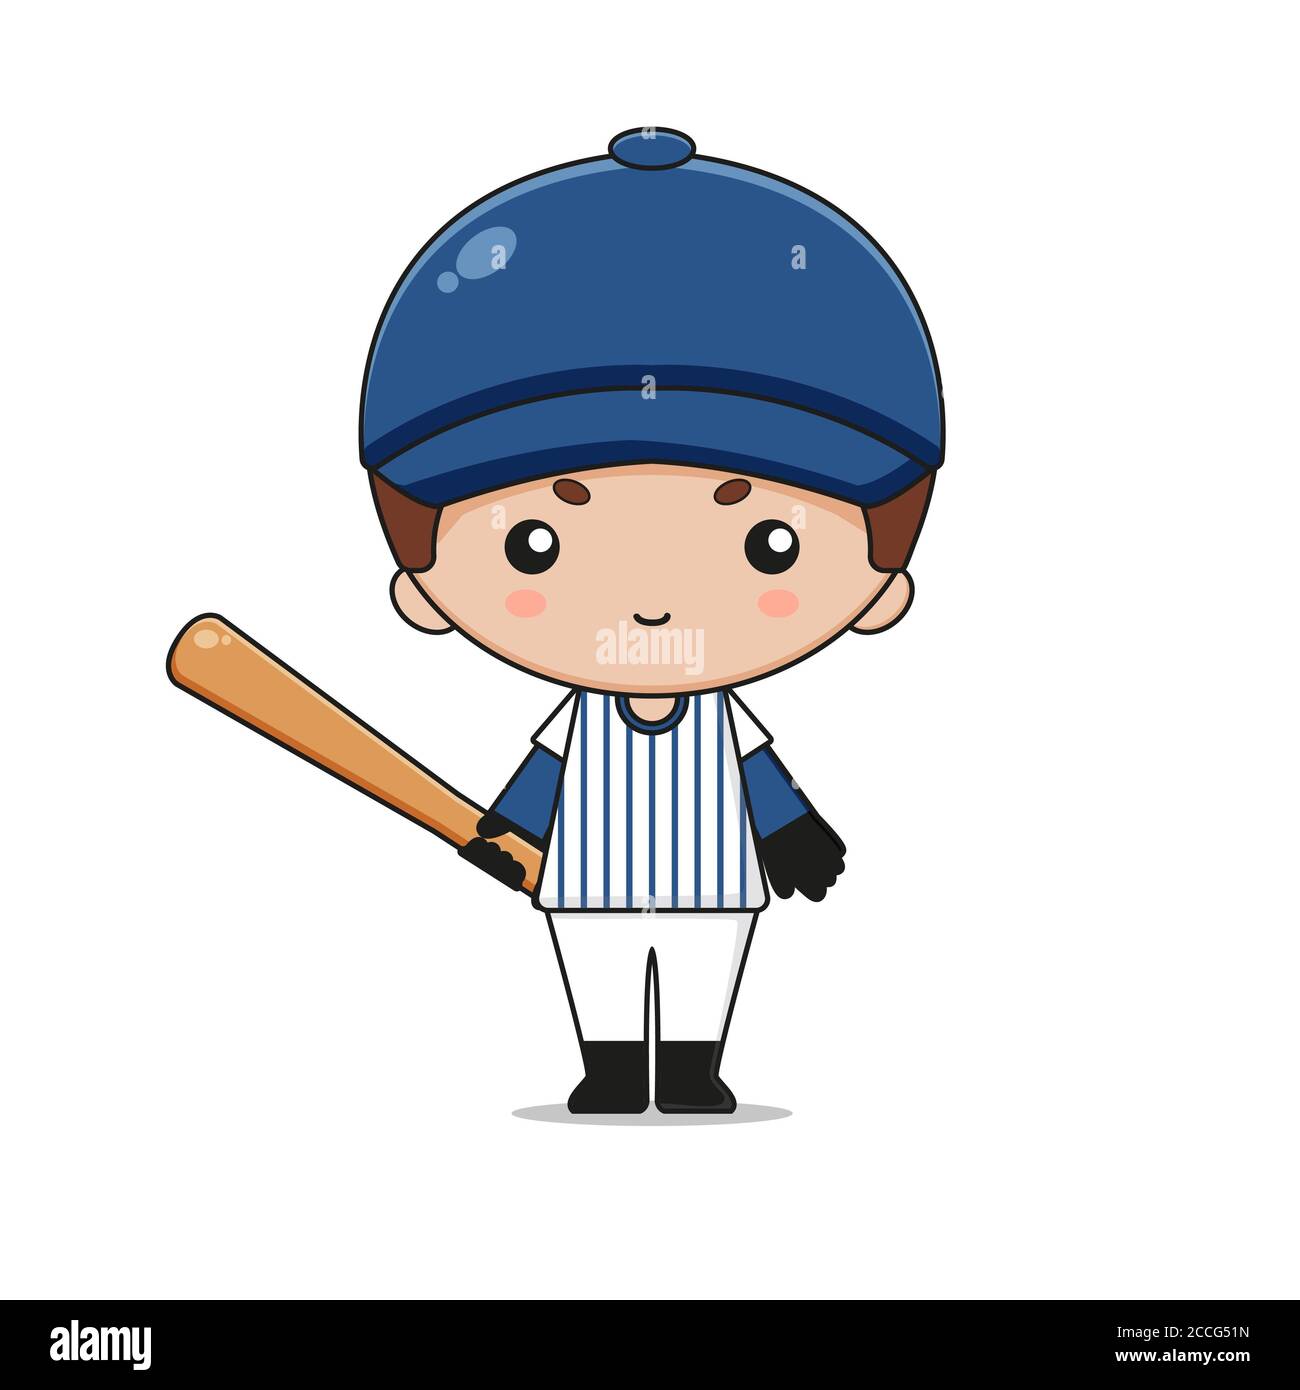 Adorable personnage de mascotte de baseball avec chauve-souris. Isolé sur fond blanc. Banque D'Images